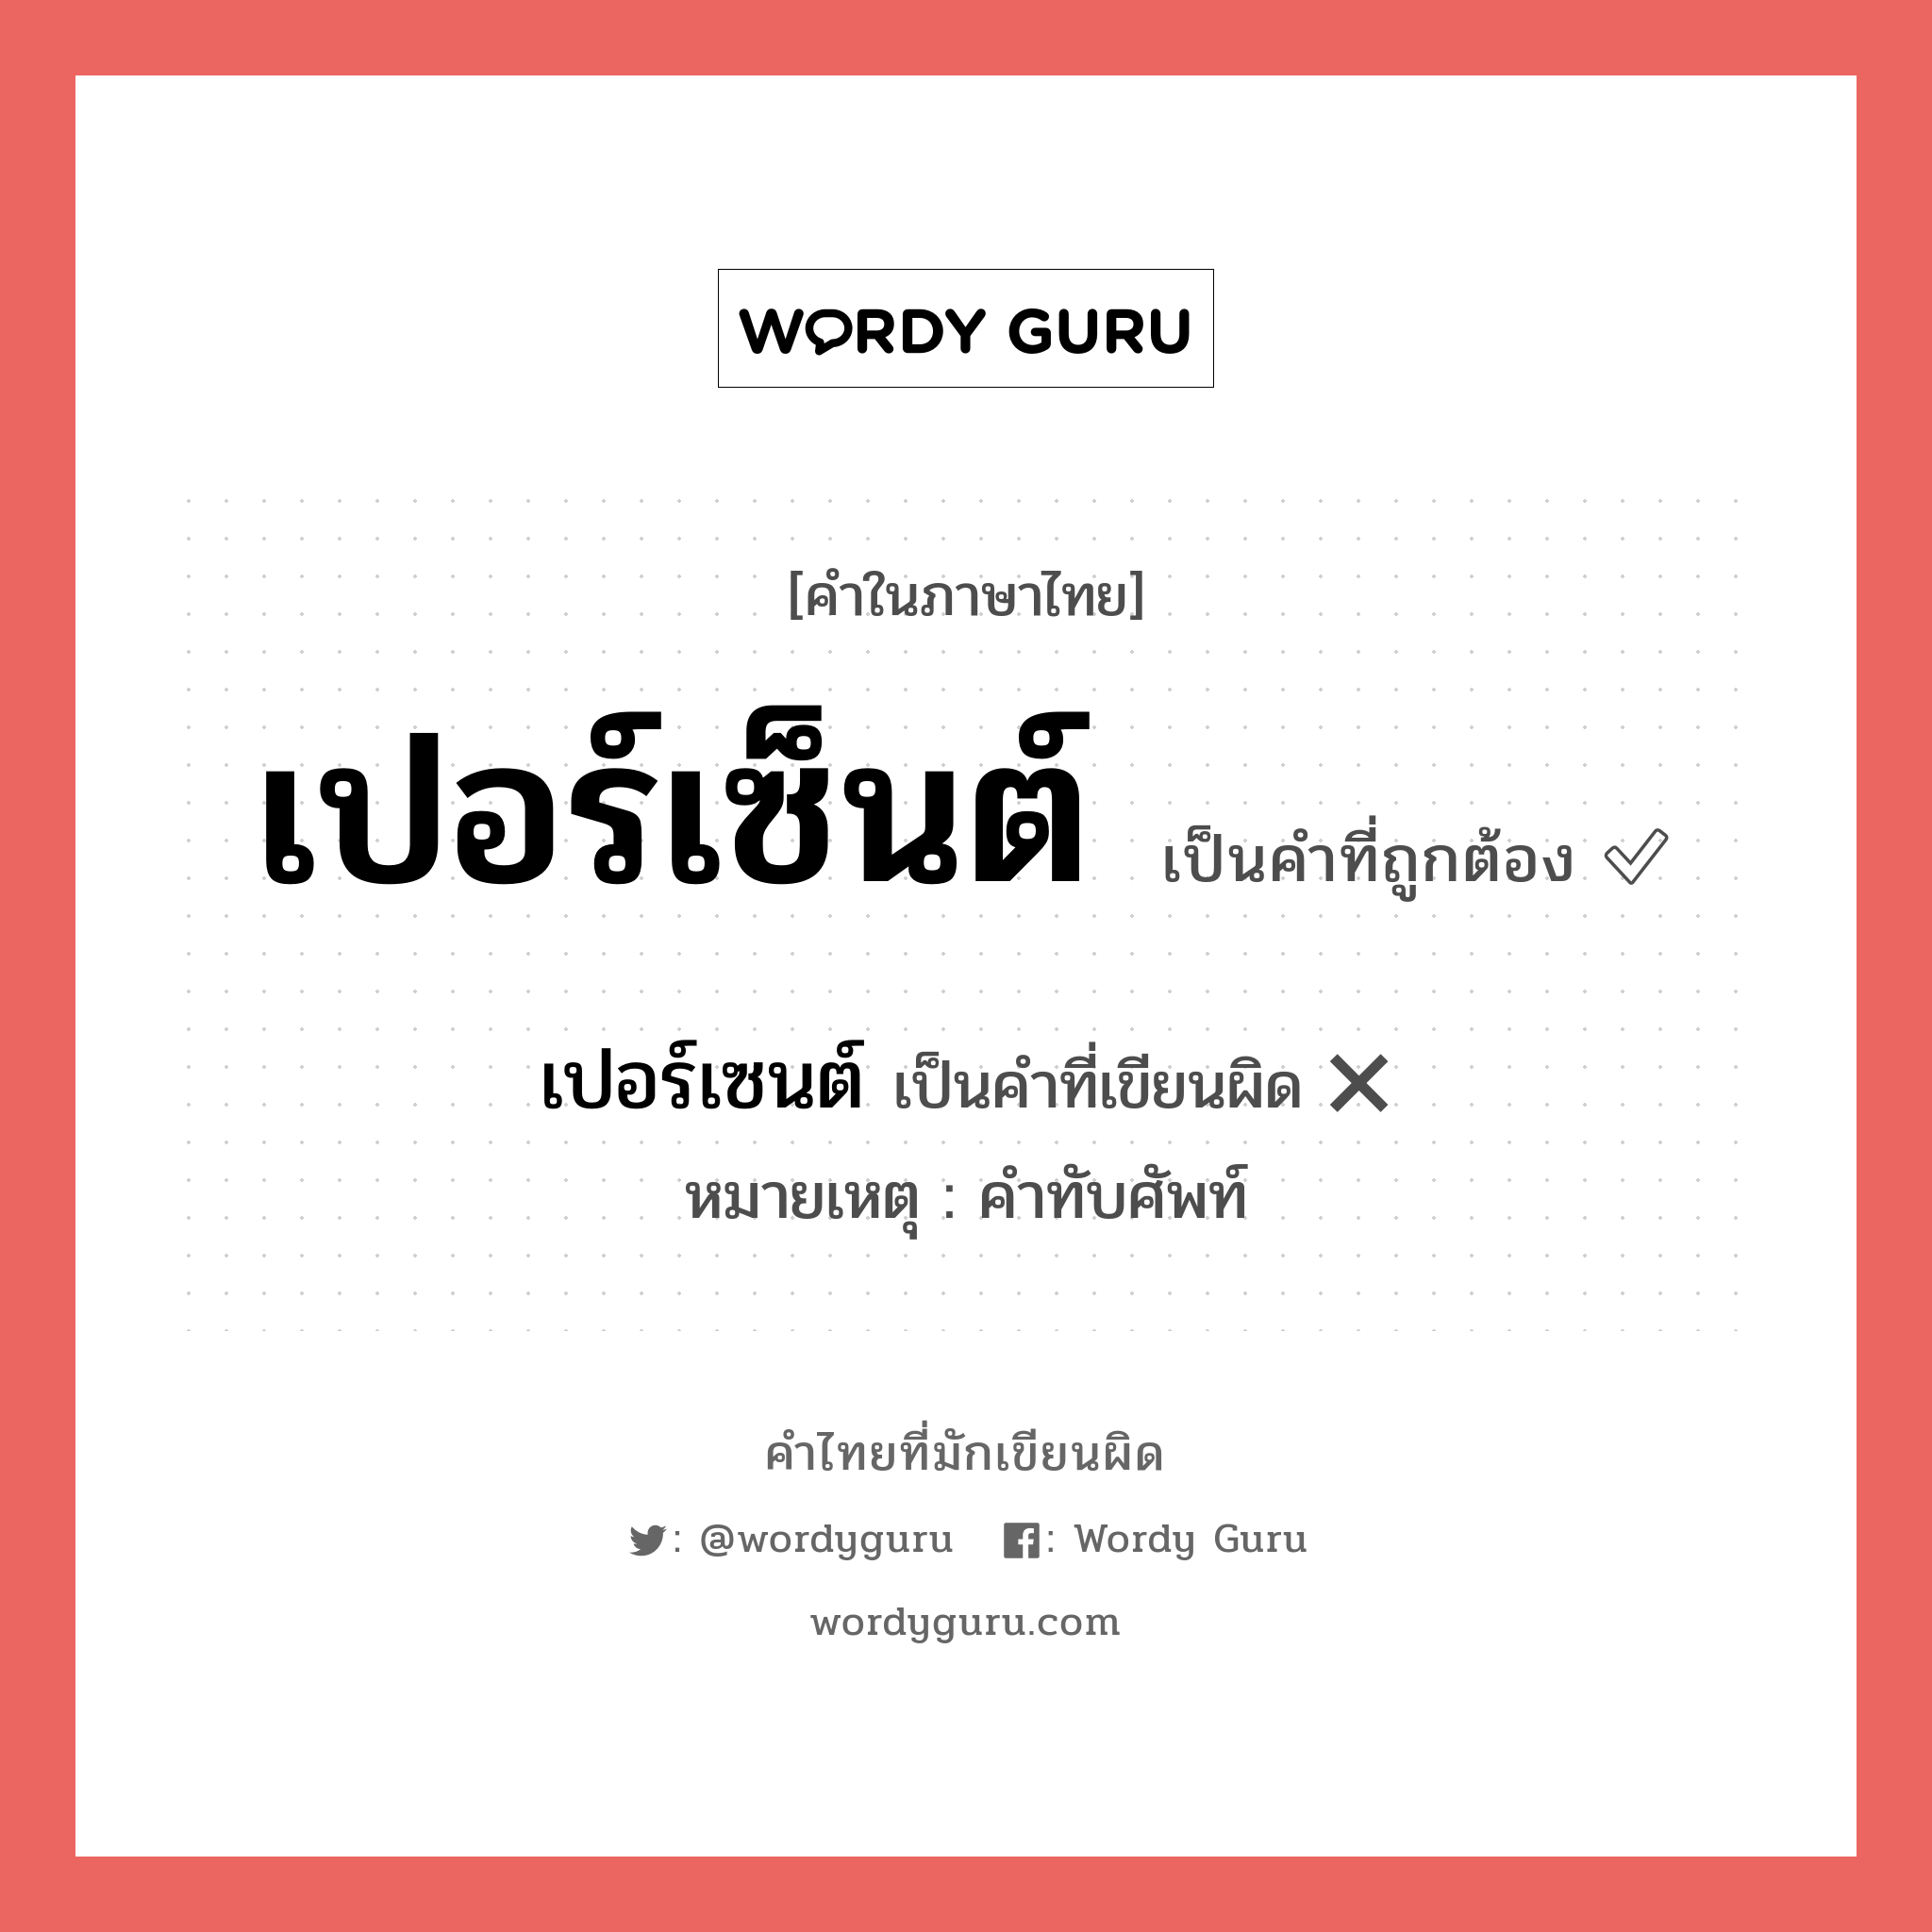 เปอร์เซ็นต์ หรือ เปอร์เซนต์ เขียนยังไง? คำไหนเขียนถูก?, คำในภาษาไทยที่มักเขียนผิด เปอร์เซ็นต์ คำที่ผิด ❌ เปอร์เซนต์ หมายเหตุ คำทับศัพท์